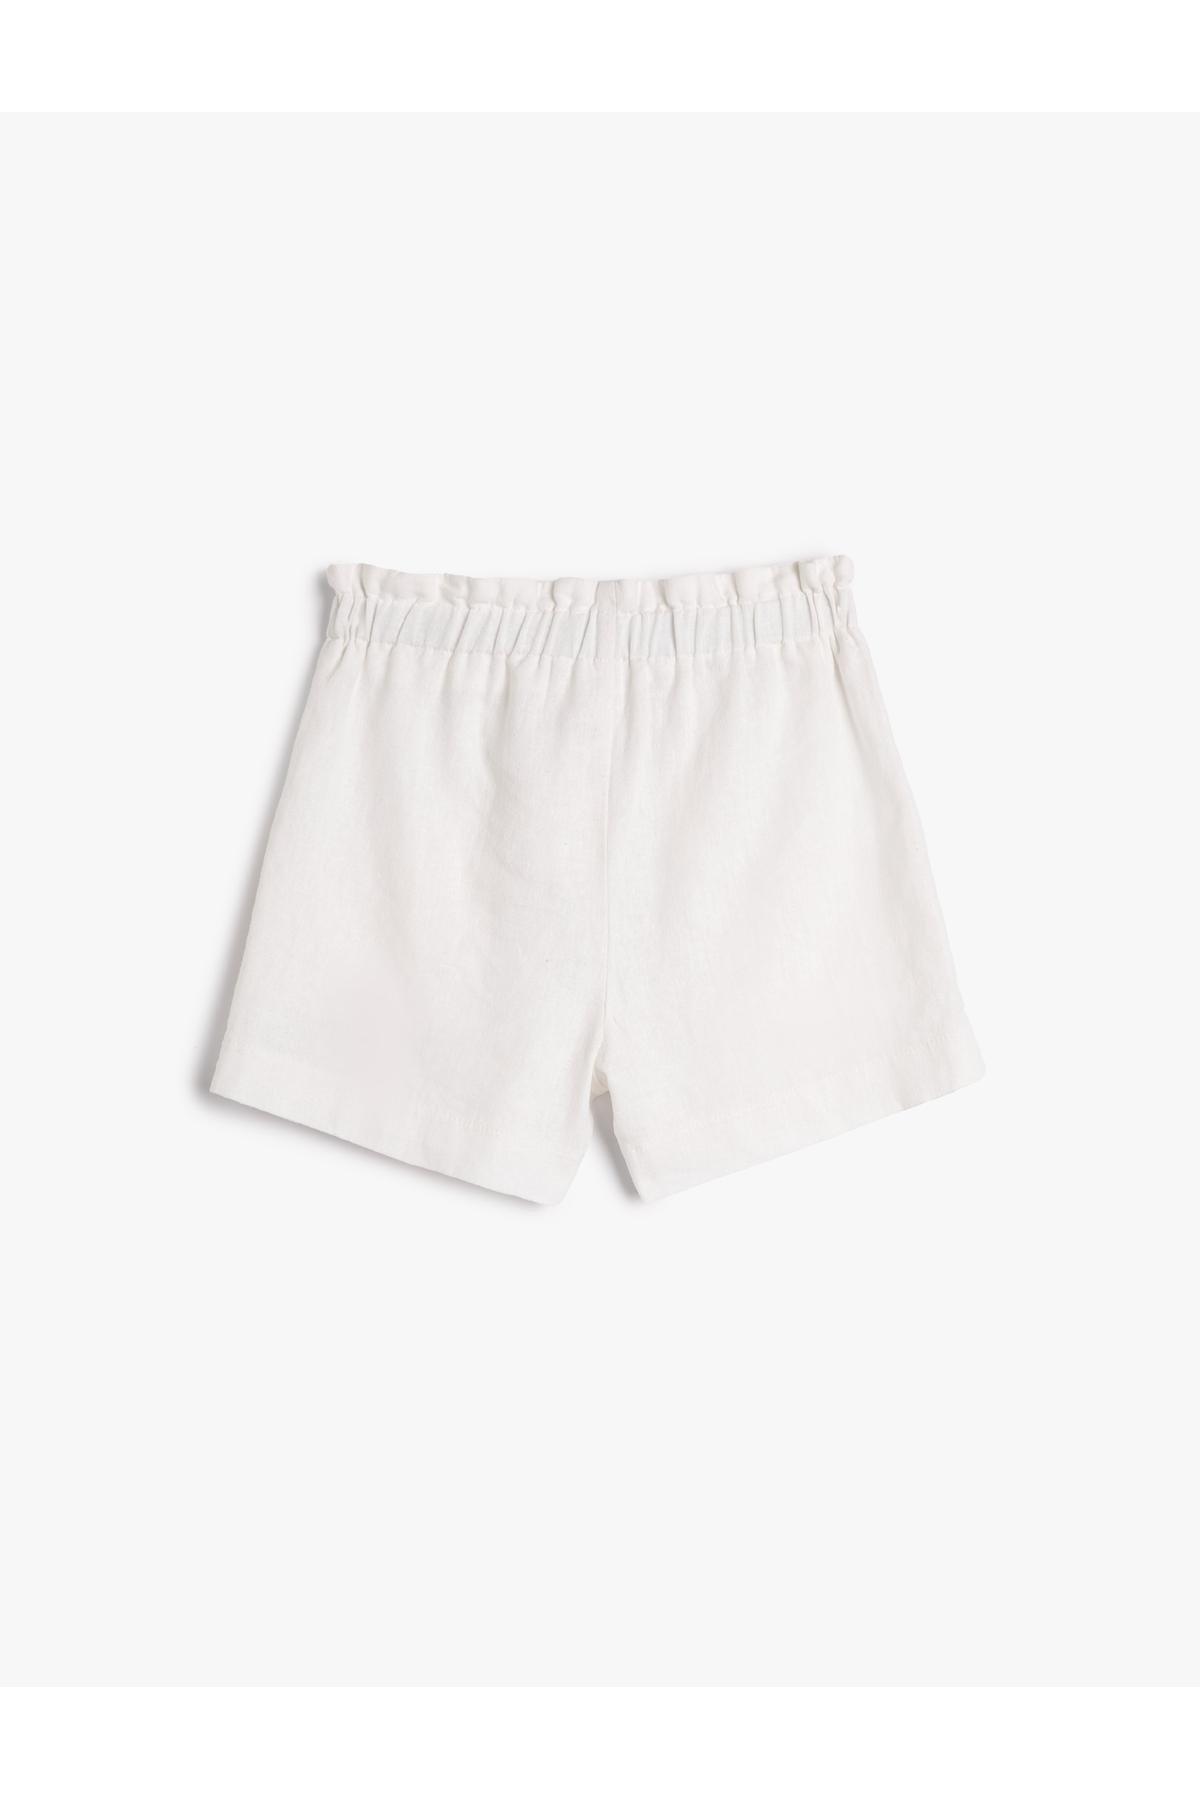 Koton - White Linen Shorts, Kids Girls